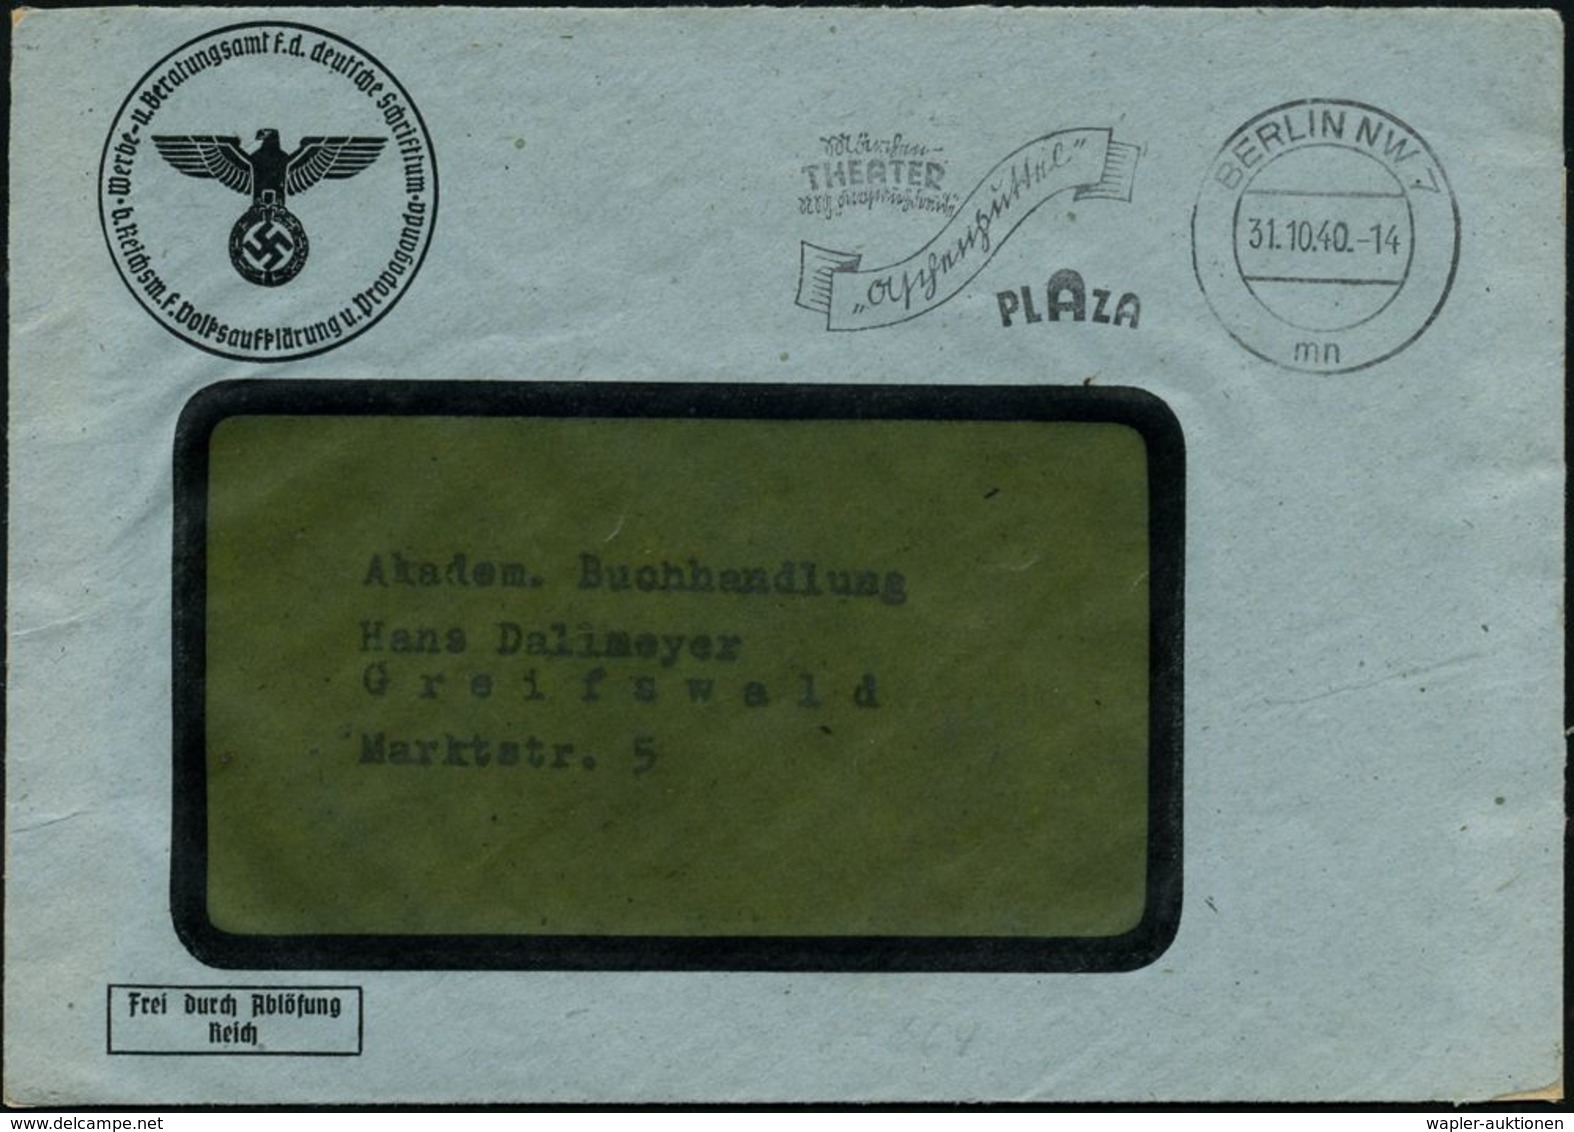 BERLIN-/ A/ NIKOLASSEE 1940 (26.4.) 1K-Brücke + Viol. Ra.: Gebührenpflichtige Dienstsache/Reichskulturkammer.. (NS-Adler - Musik